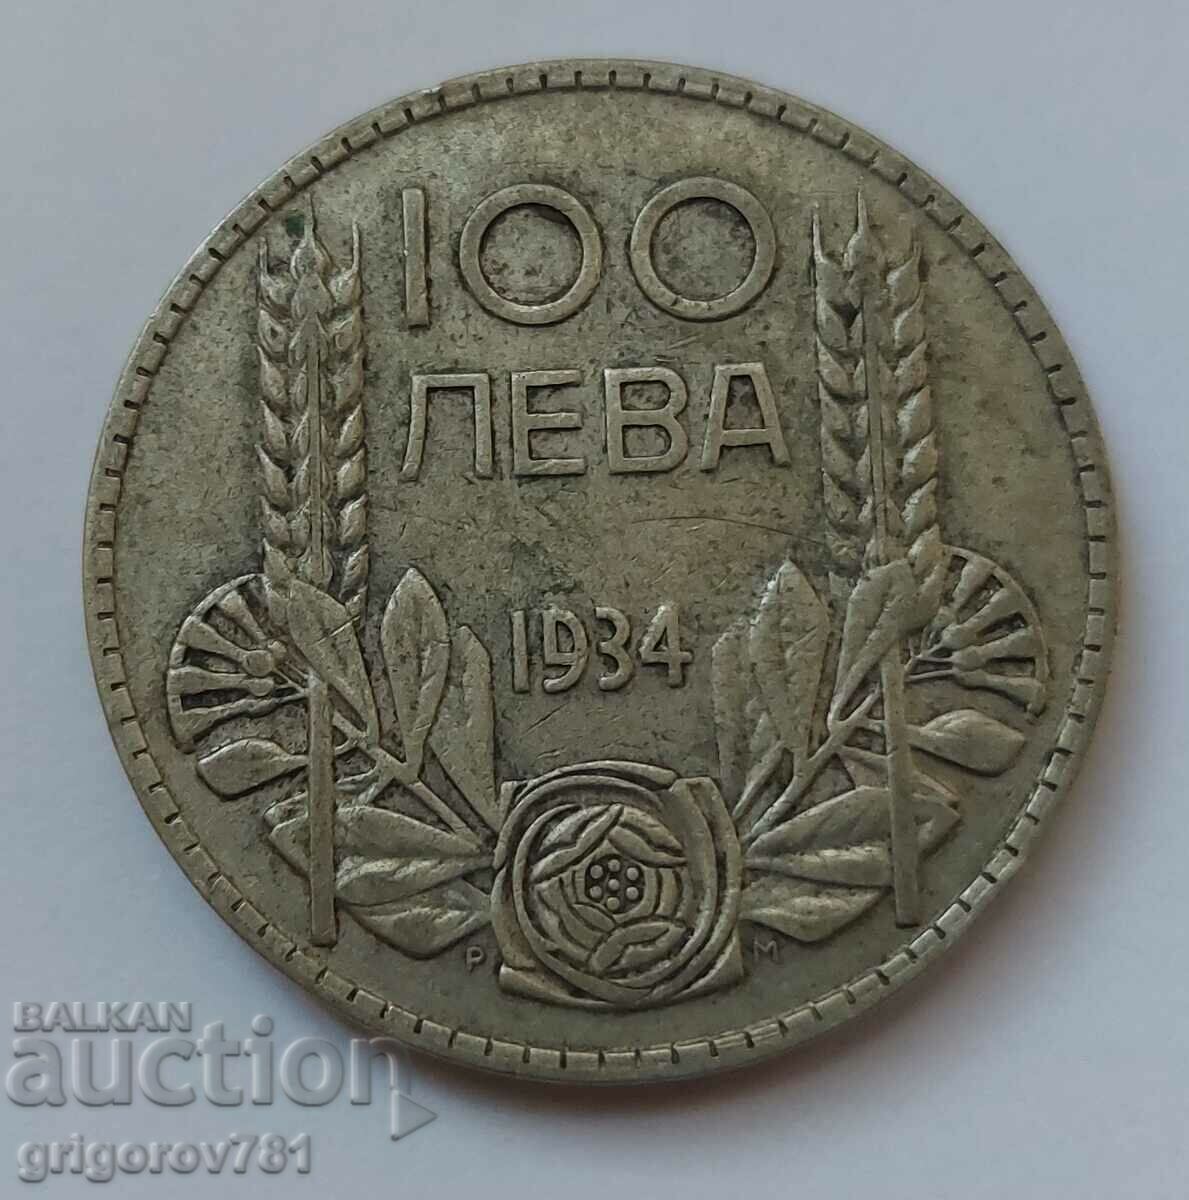 Ασήμι 100 λέβα Βουλγαρία 1934 - ασημένιο νόμισμα #99